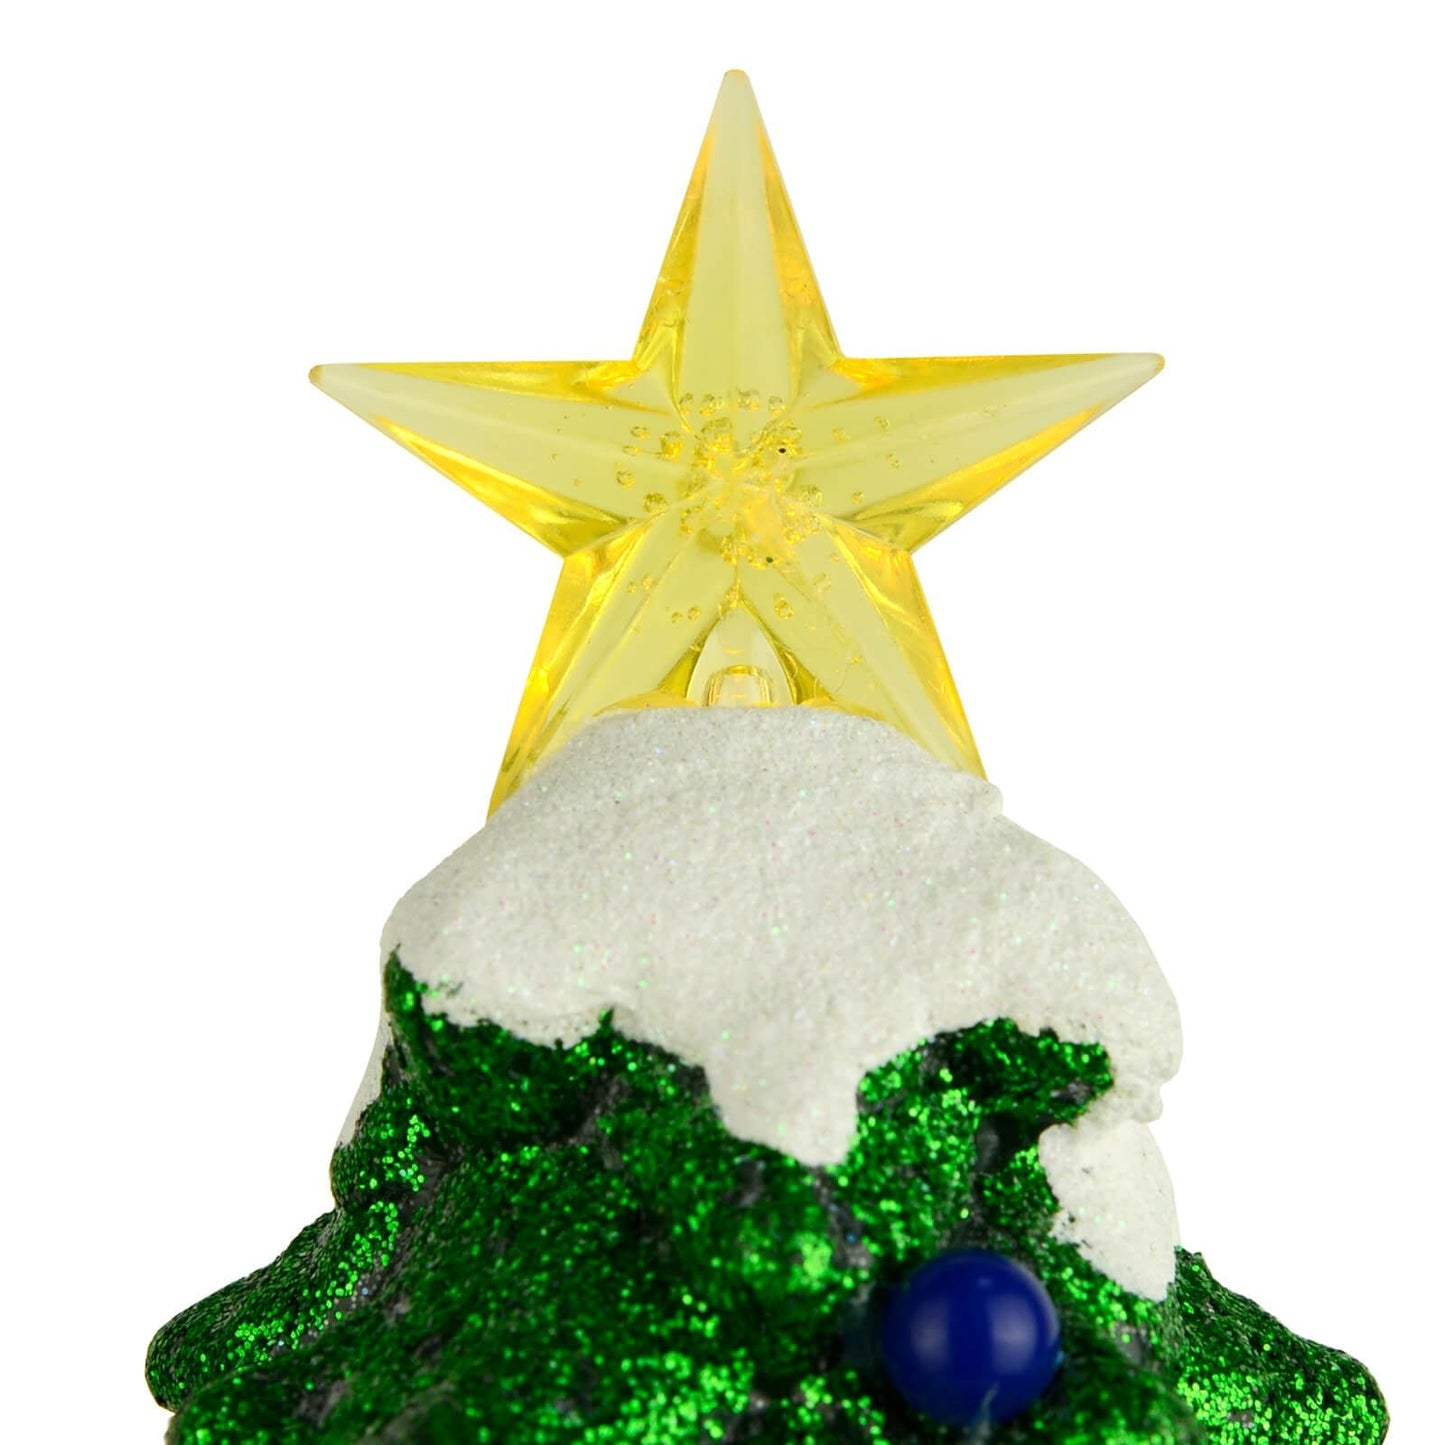 Mr Crimbo Christmas Tree LED Moving Trains Musical Snow Scene 39cm - MrCrimbo.co.uk -XS7471 - -christmas decoration